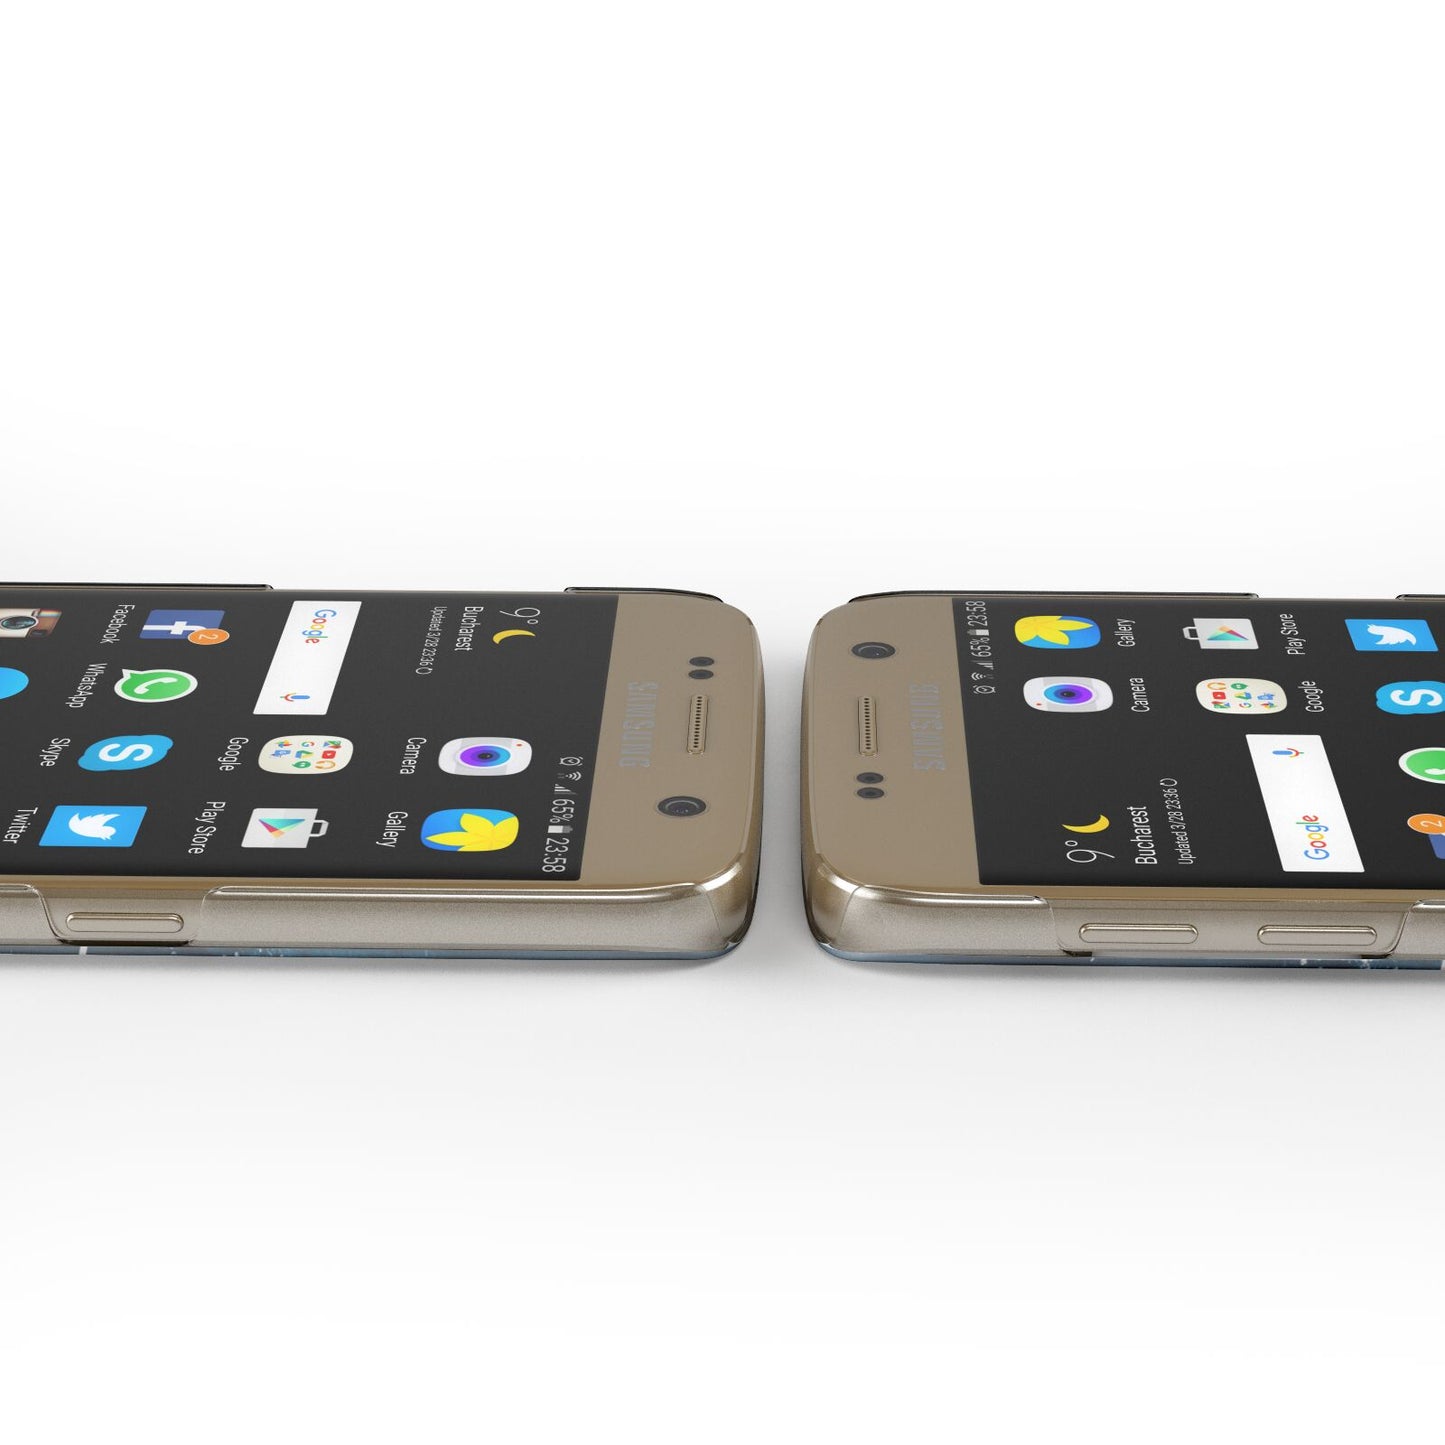 Custom Sea Samsung Galaxy Case Ports Cutout